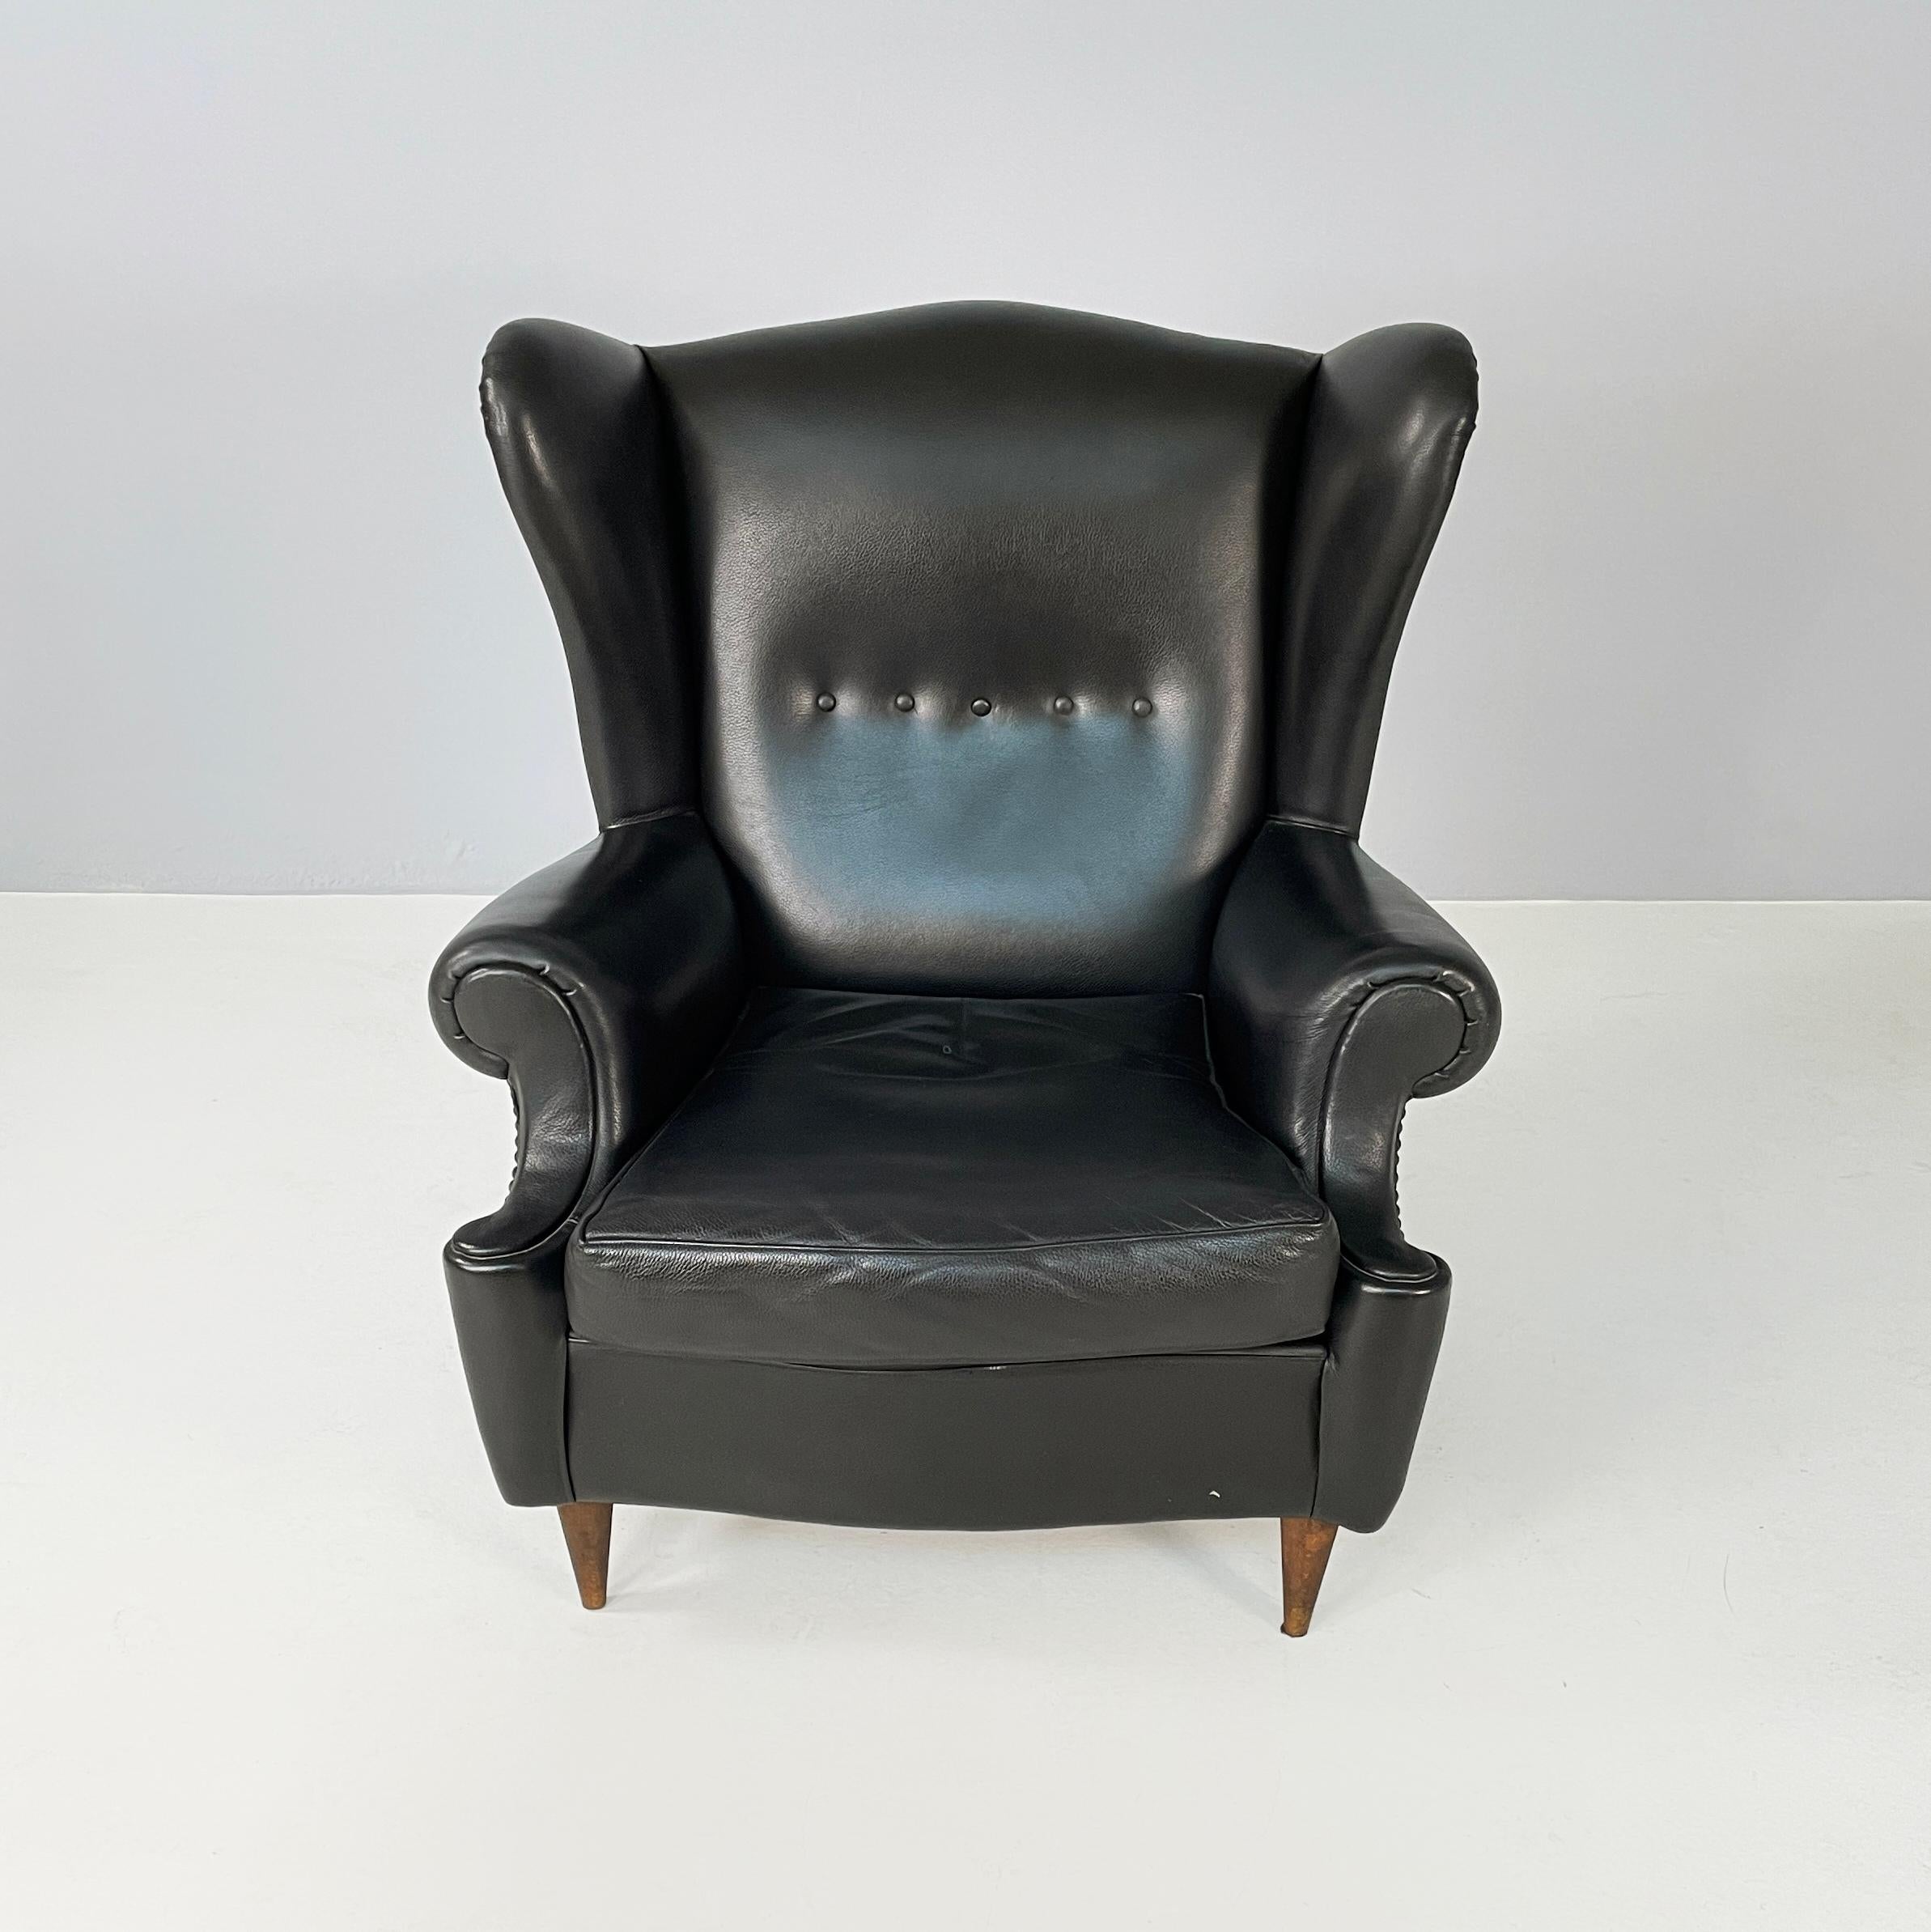 Moderner italienischer Bergere-Sessel aus schwarzem Leder und Holz, 1970er Jahre
Sessel Bergere, vollständig gepolstert und mit schwarzem Leder bezogen. Der hohe Rücken ist mit 5 Knöpfen versehen. Der Sitz besteht aus einem gepolsterten